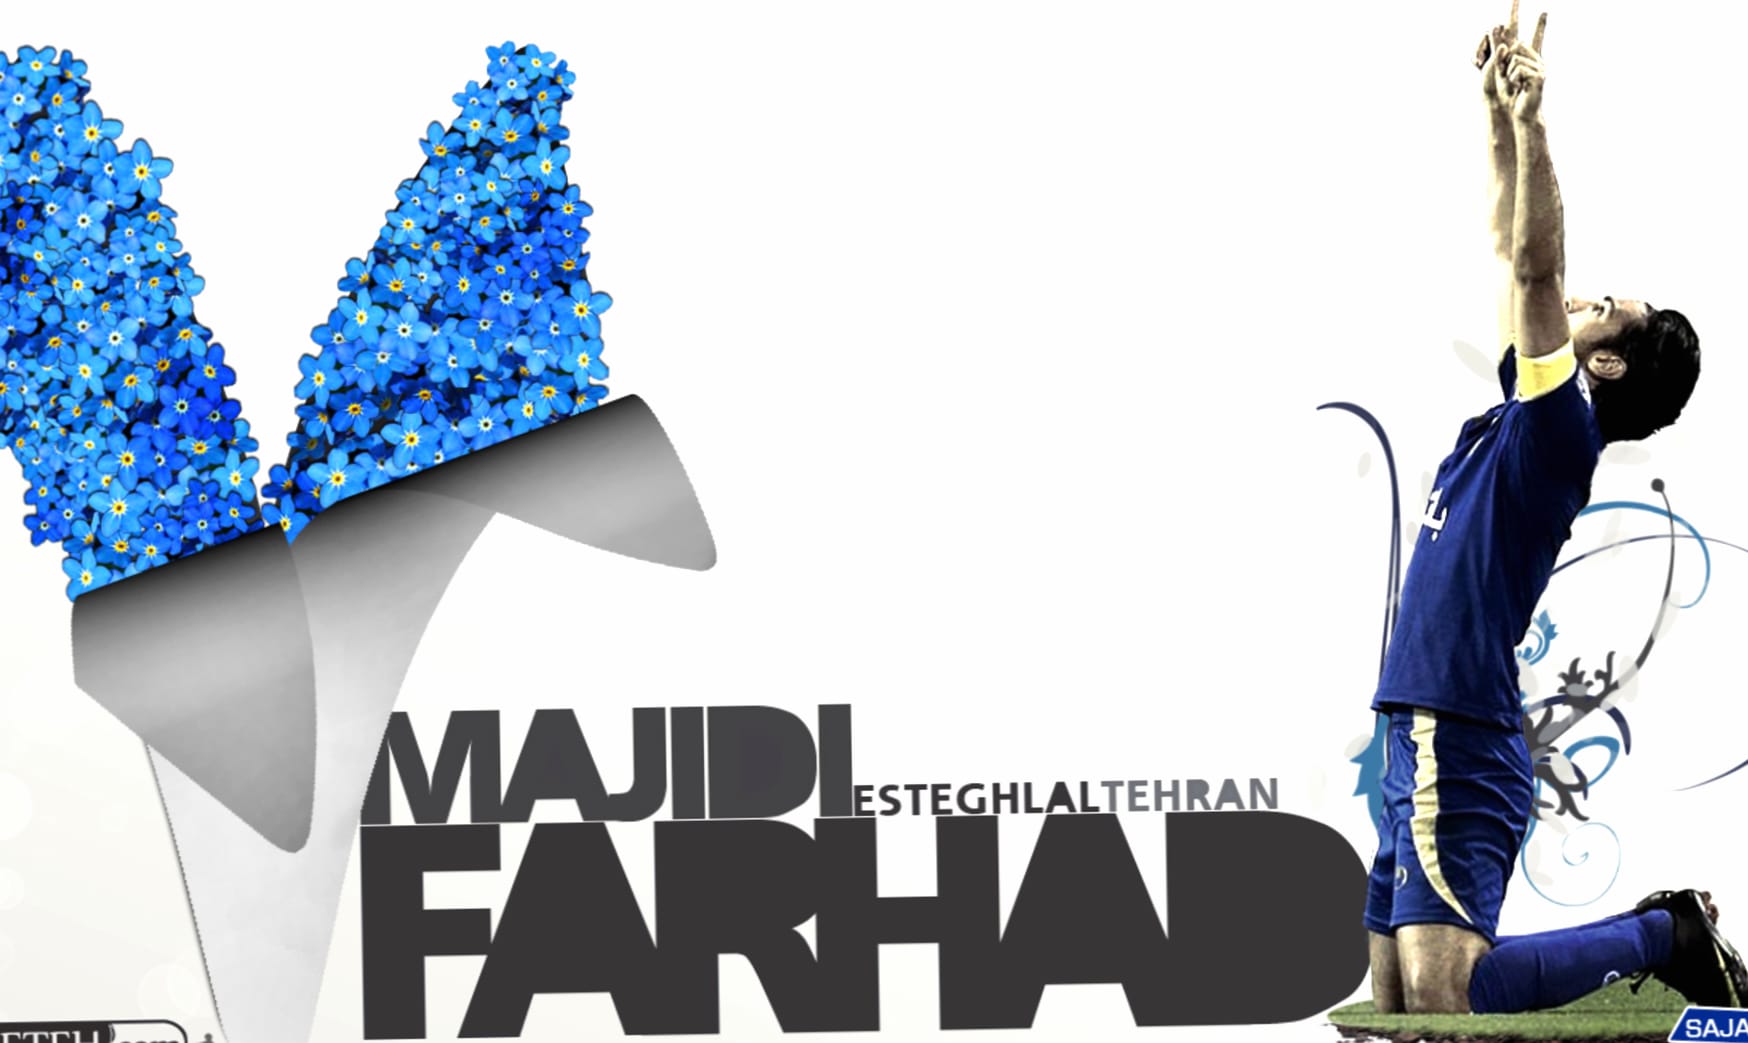 Farhad Majidi at 1024 x 1024 iPad size wallpapers HD quality